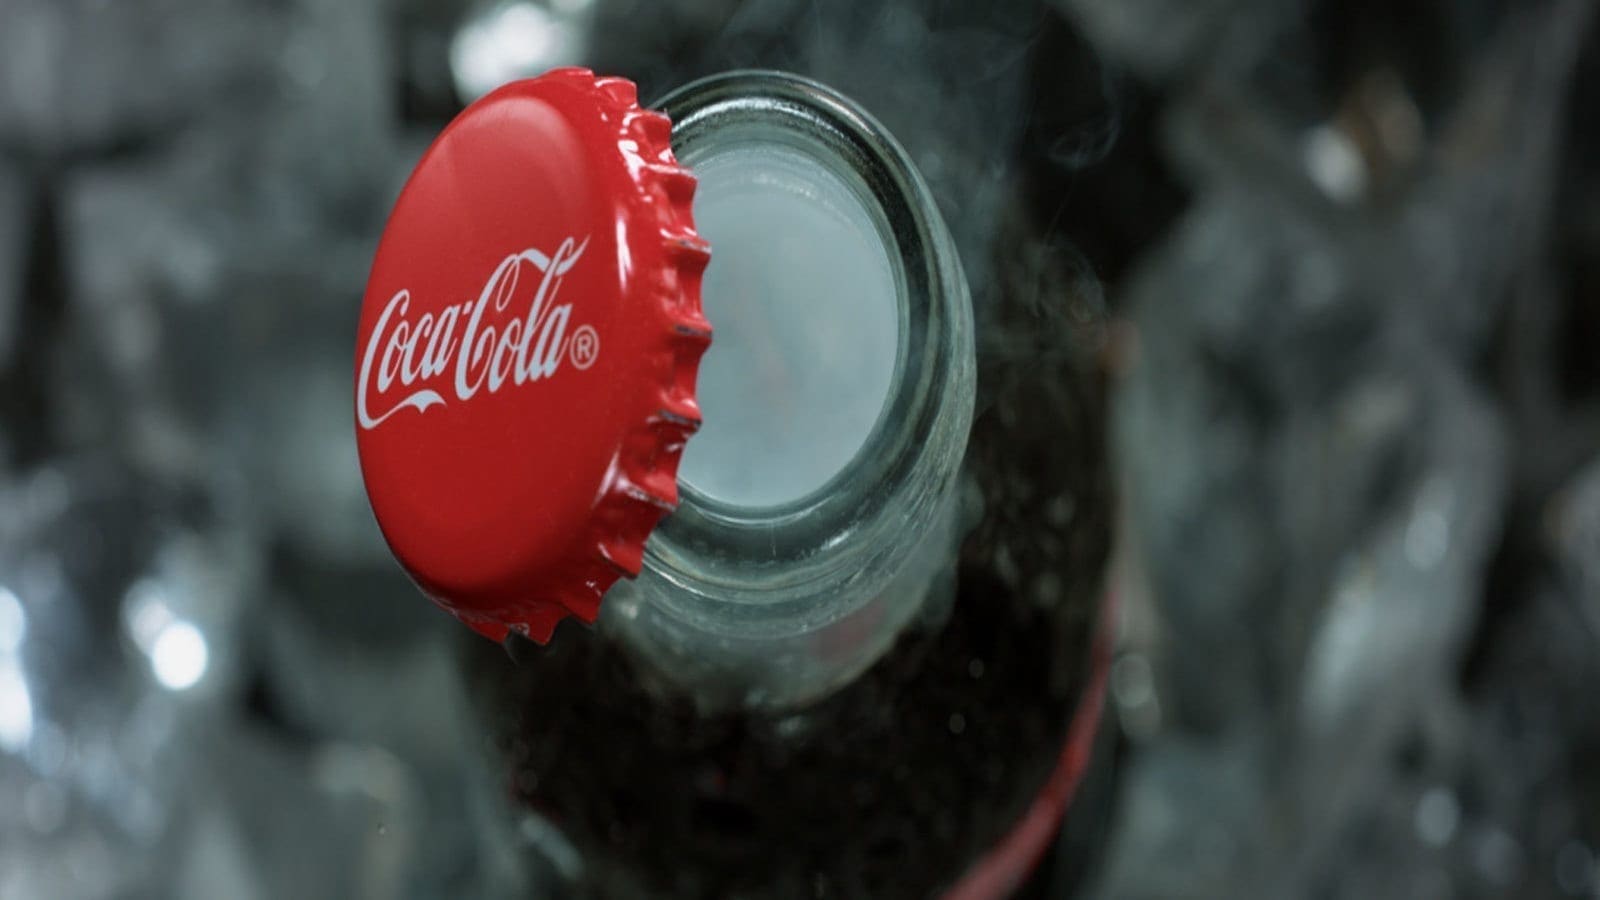 Coca-Cola Company records 9% decline in its Q3 net revenue of 2020